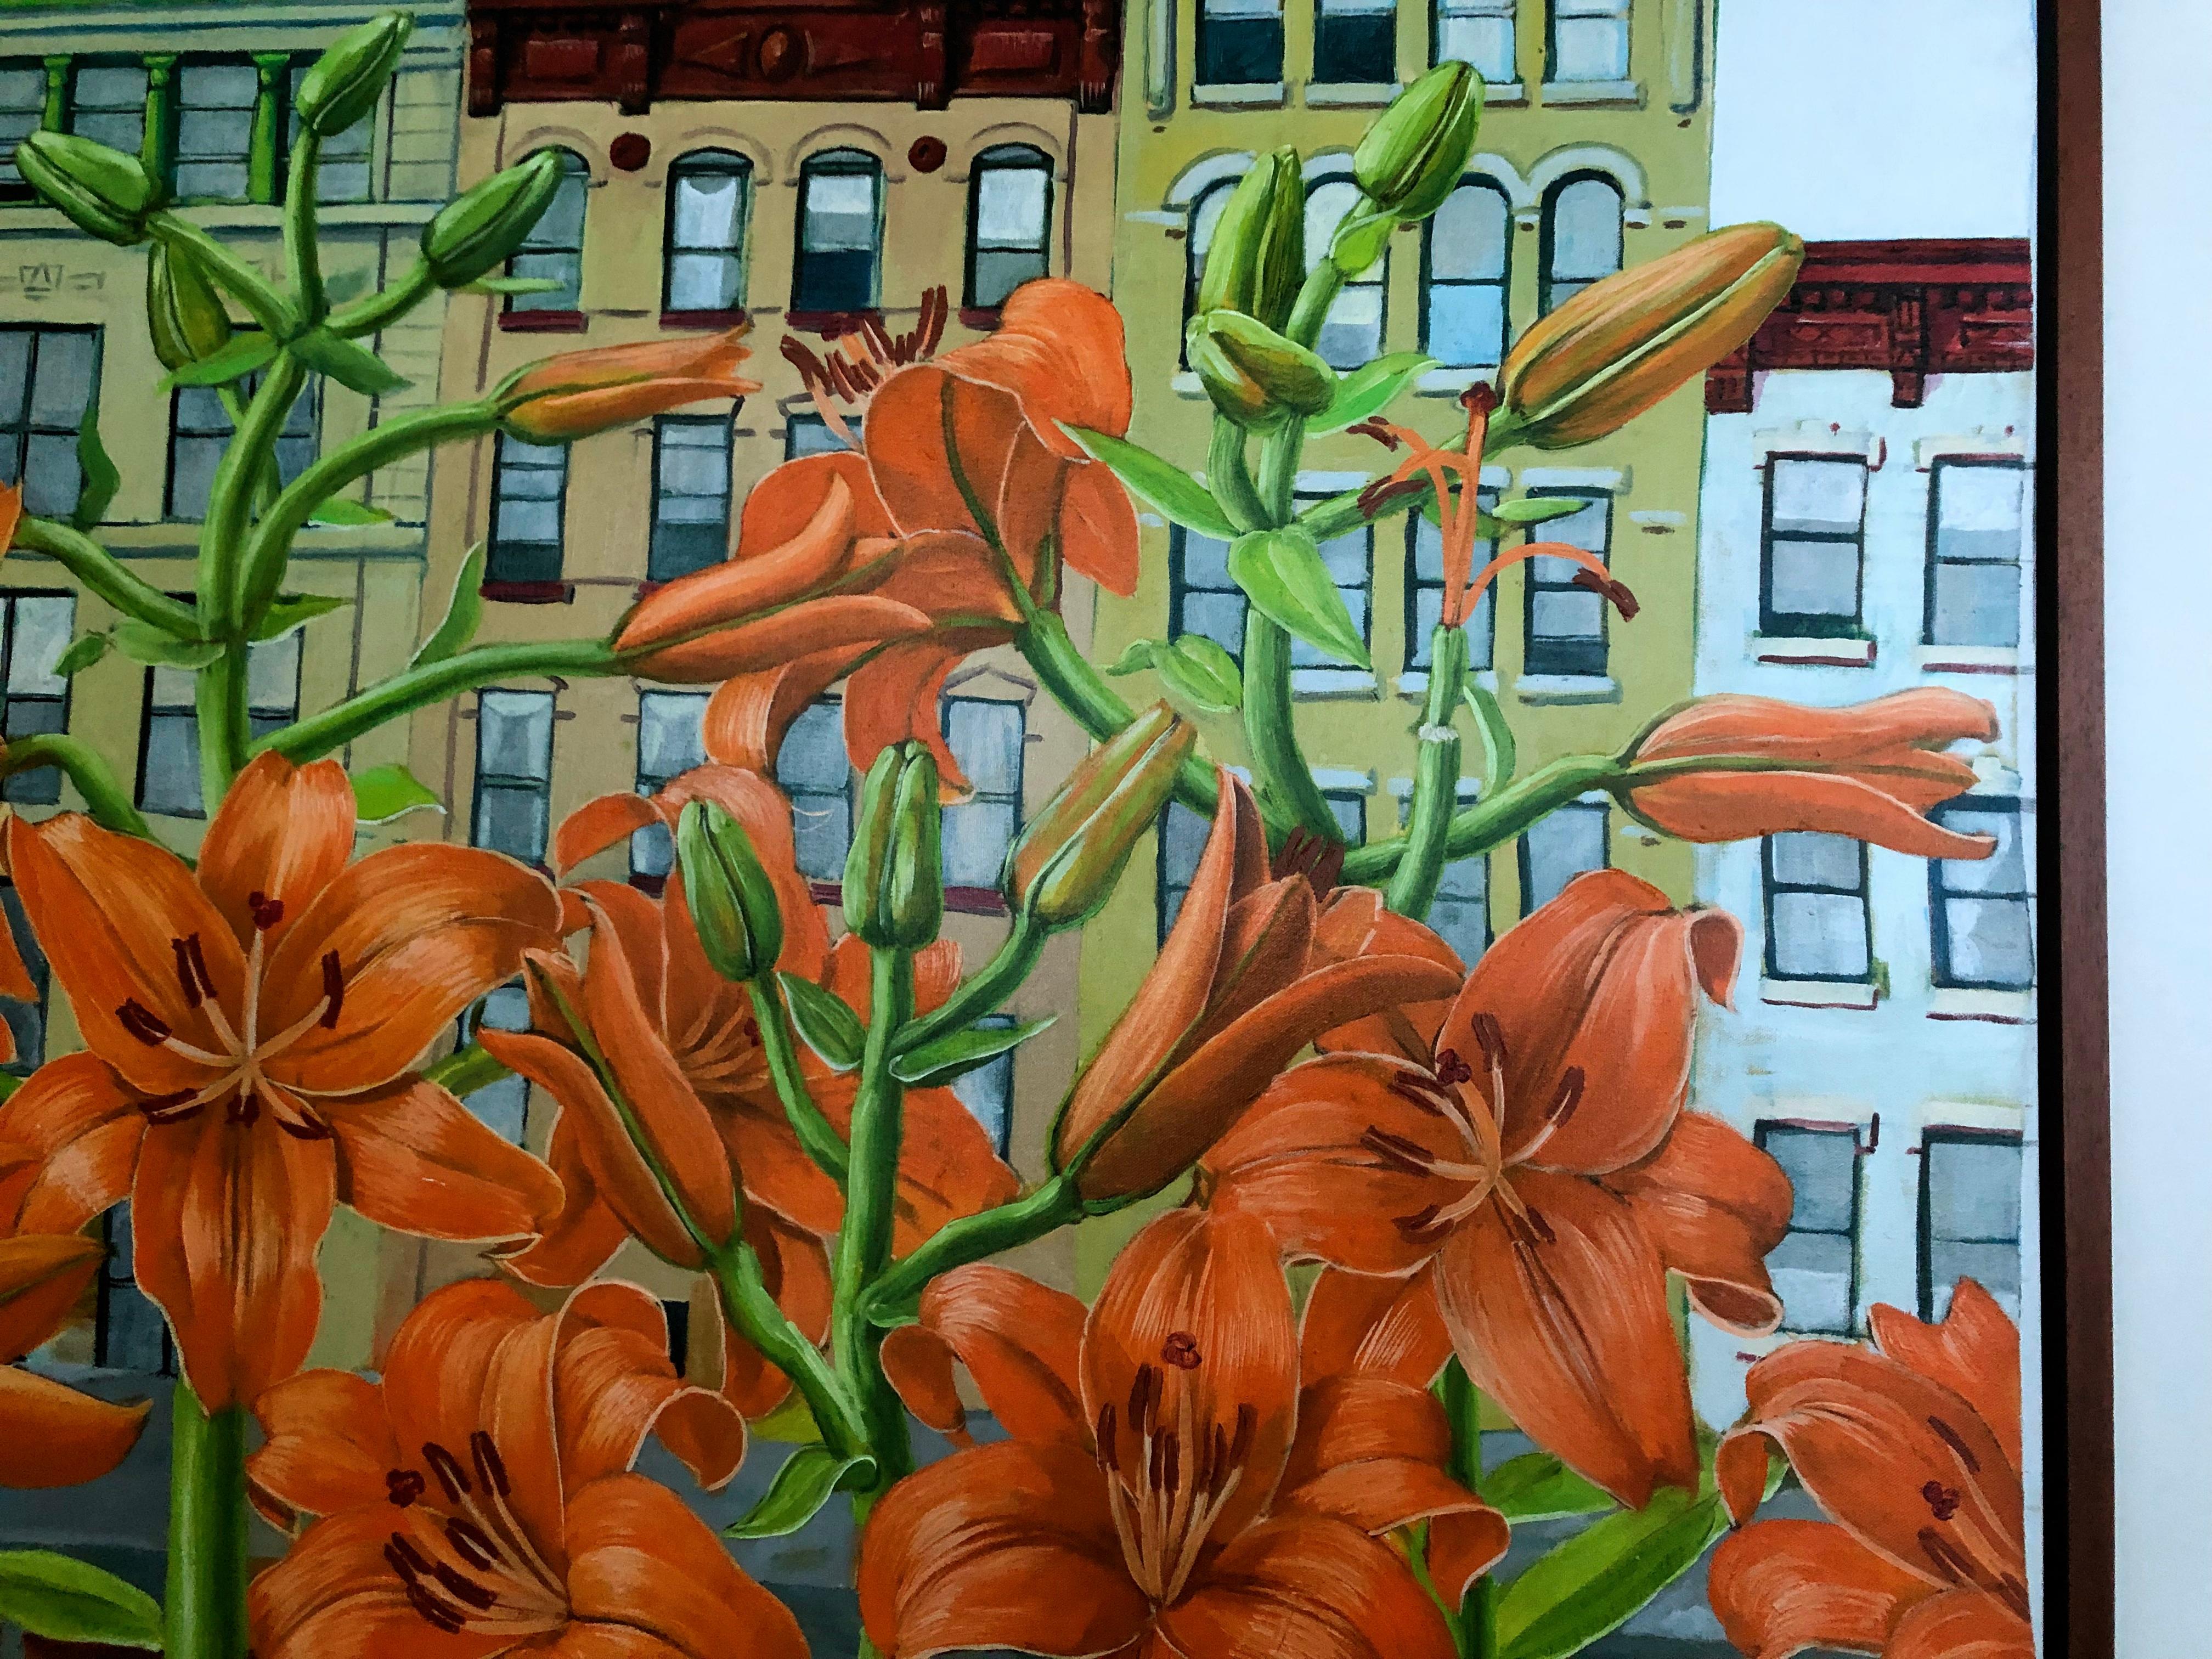  Lilien im East Village, New York  – Painting von Rafael Saldarriaga